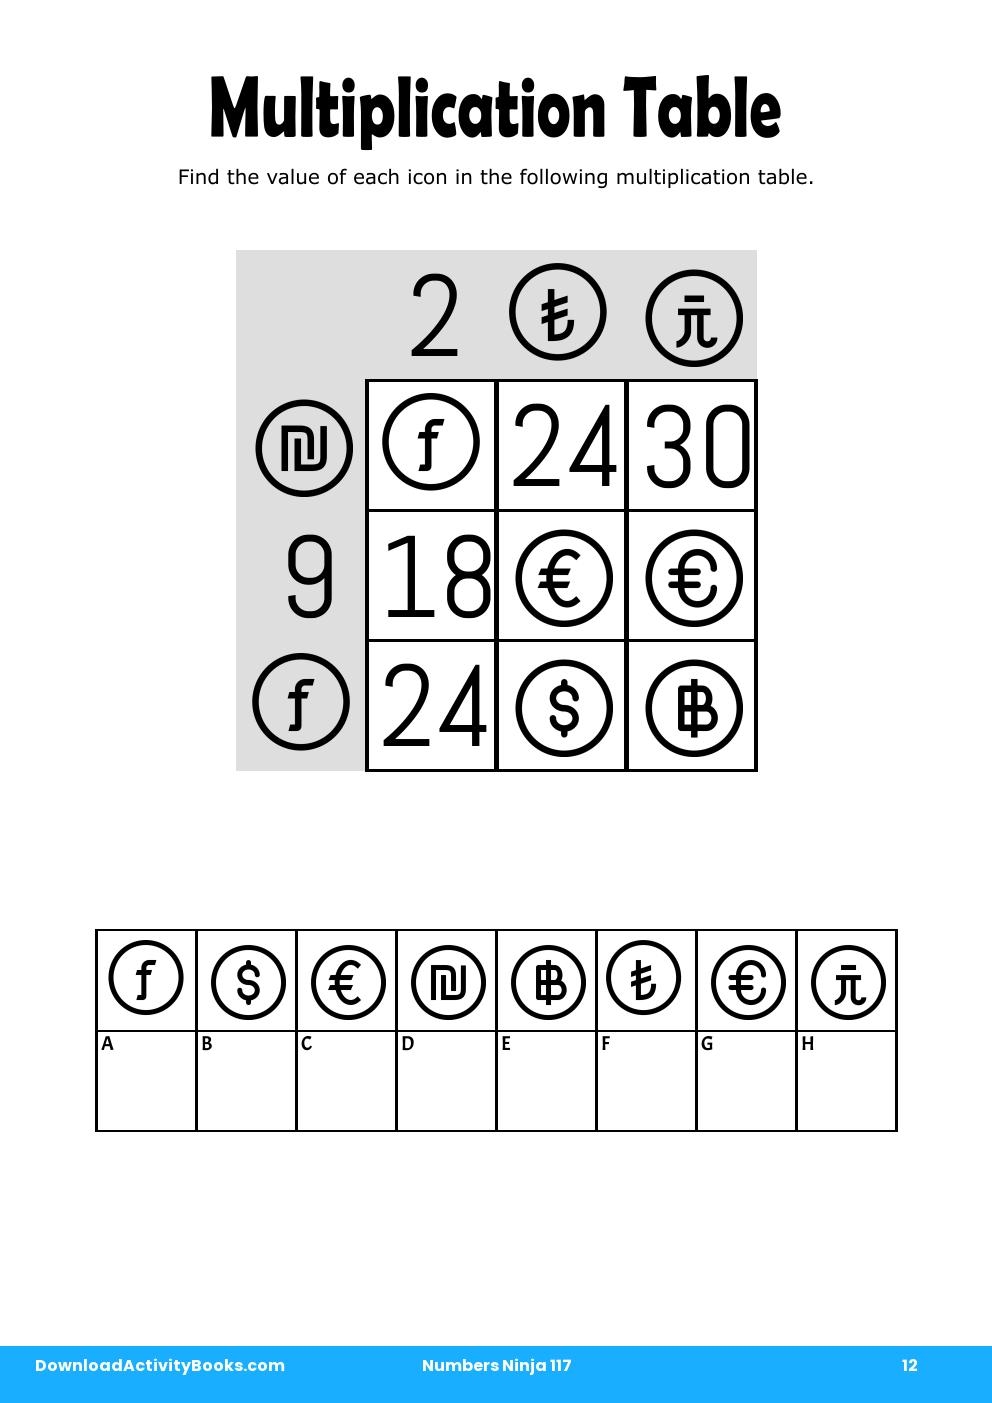 Multiplication Table in Numbers Ninja 117